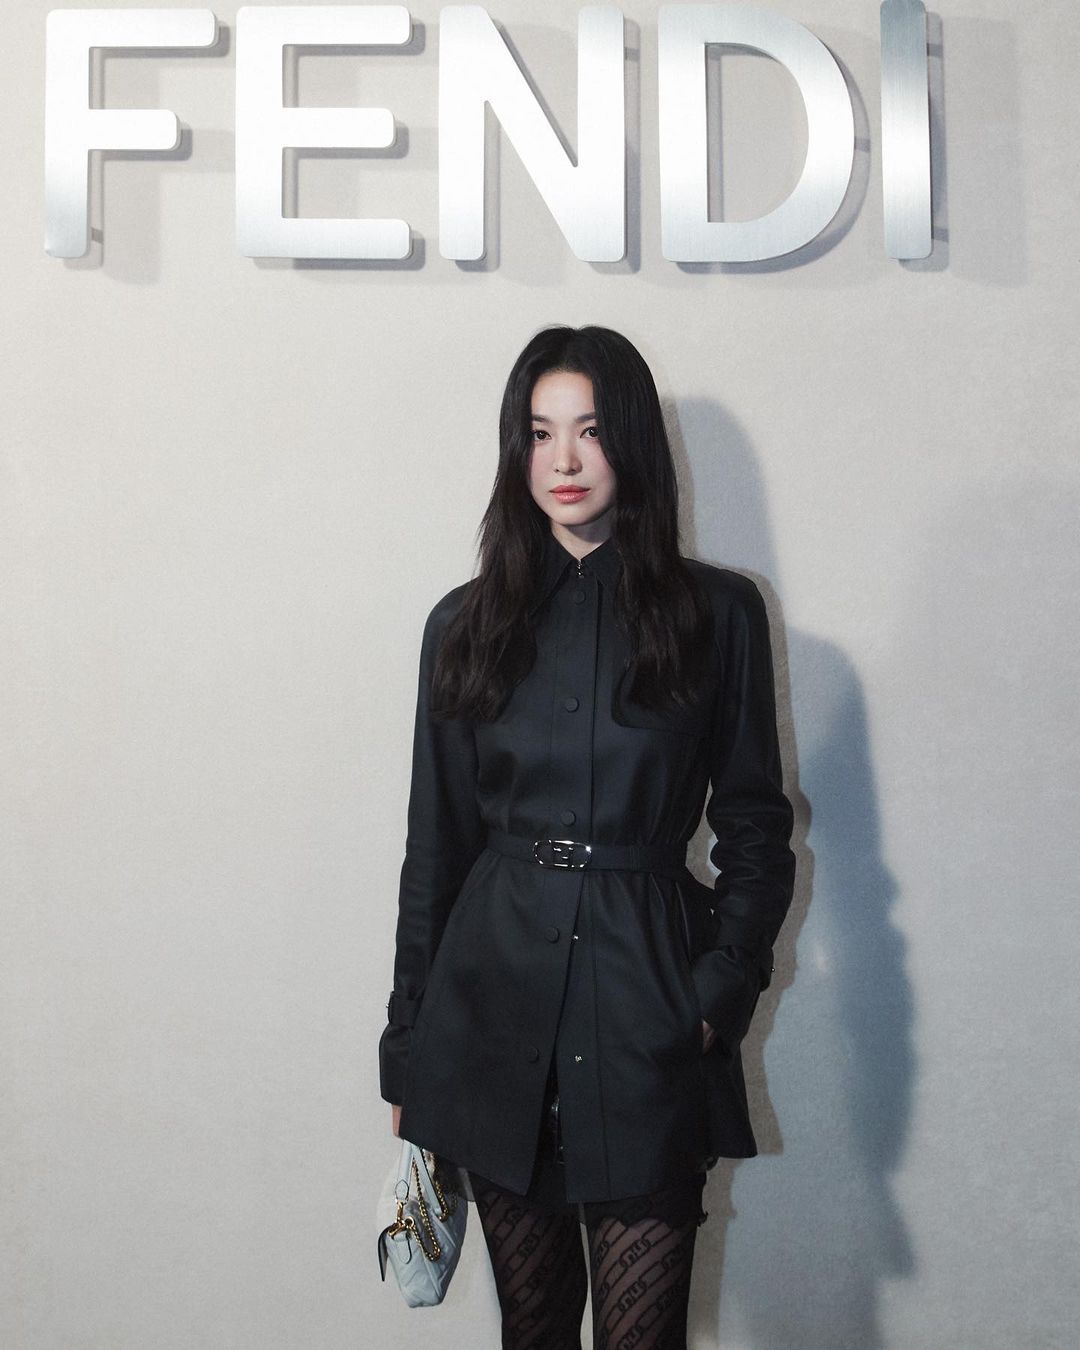 7749 outfit đẳng cấp chứng minh Song Hye Kyo là đại sứ hoàn hảo của Fendi - Ảnh 1.